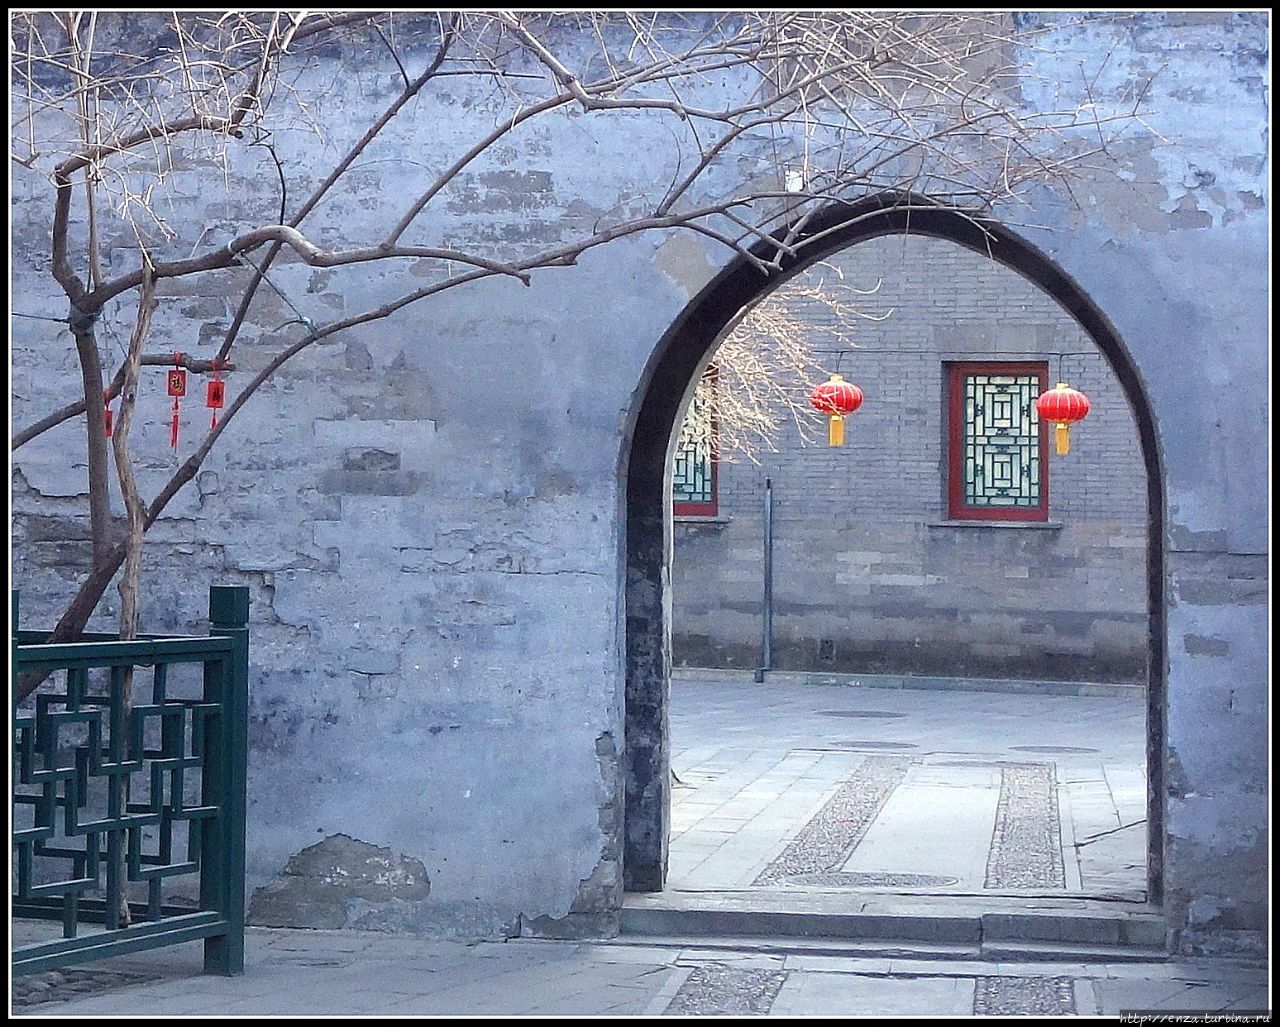 Гунванфу - один из самых красивых дворцов Пекина